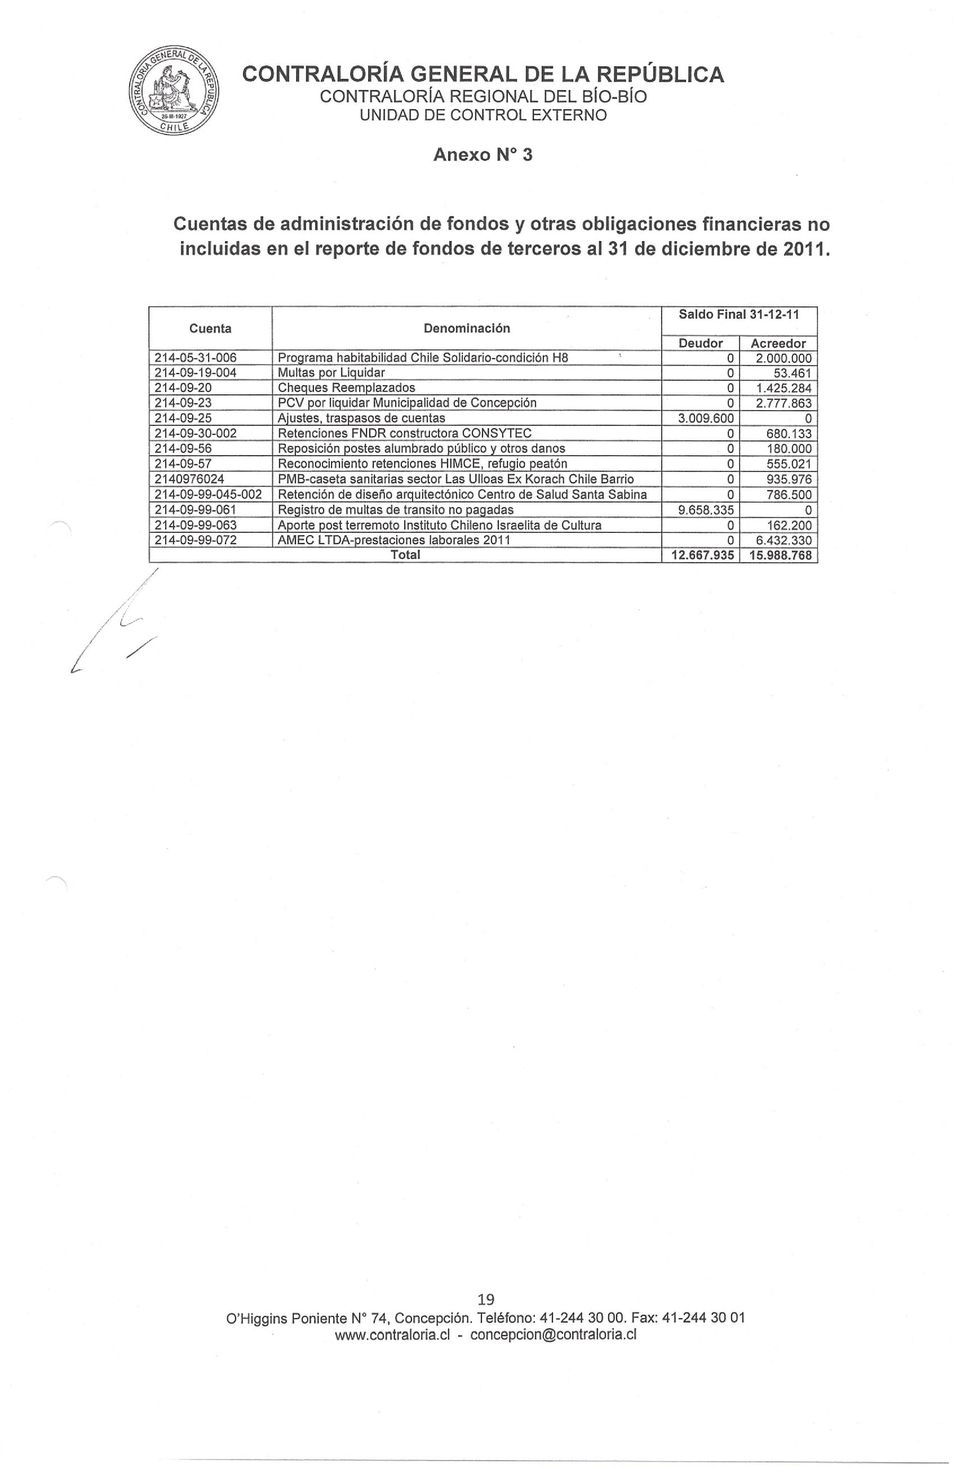 461 214-09-20 Cheques Reemplazados O 1.425.284 214-09-23 PCV por liquidar Municipalidad de Concepción O 2.777.863 214-09-25 Ajustes, traspasos de cuentas 3.009.